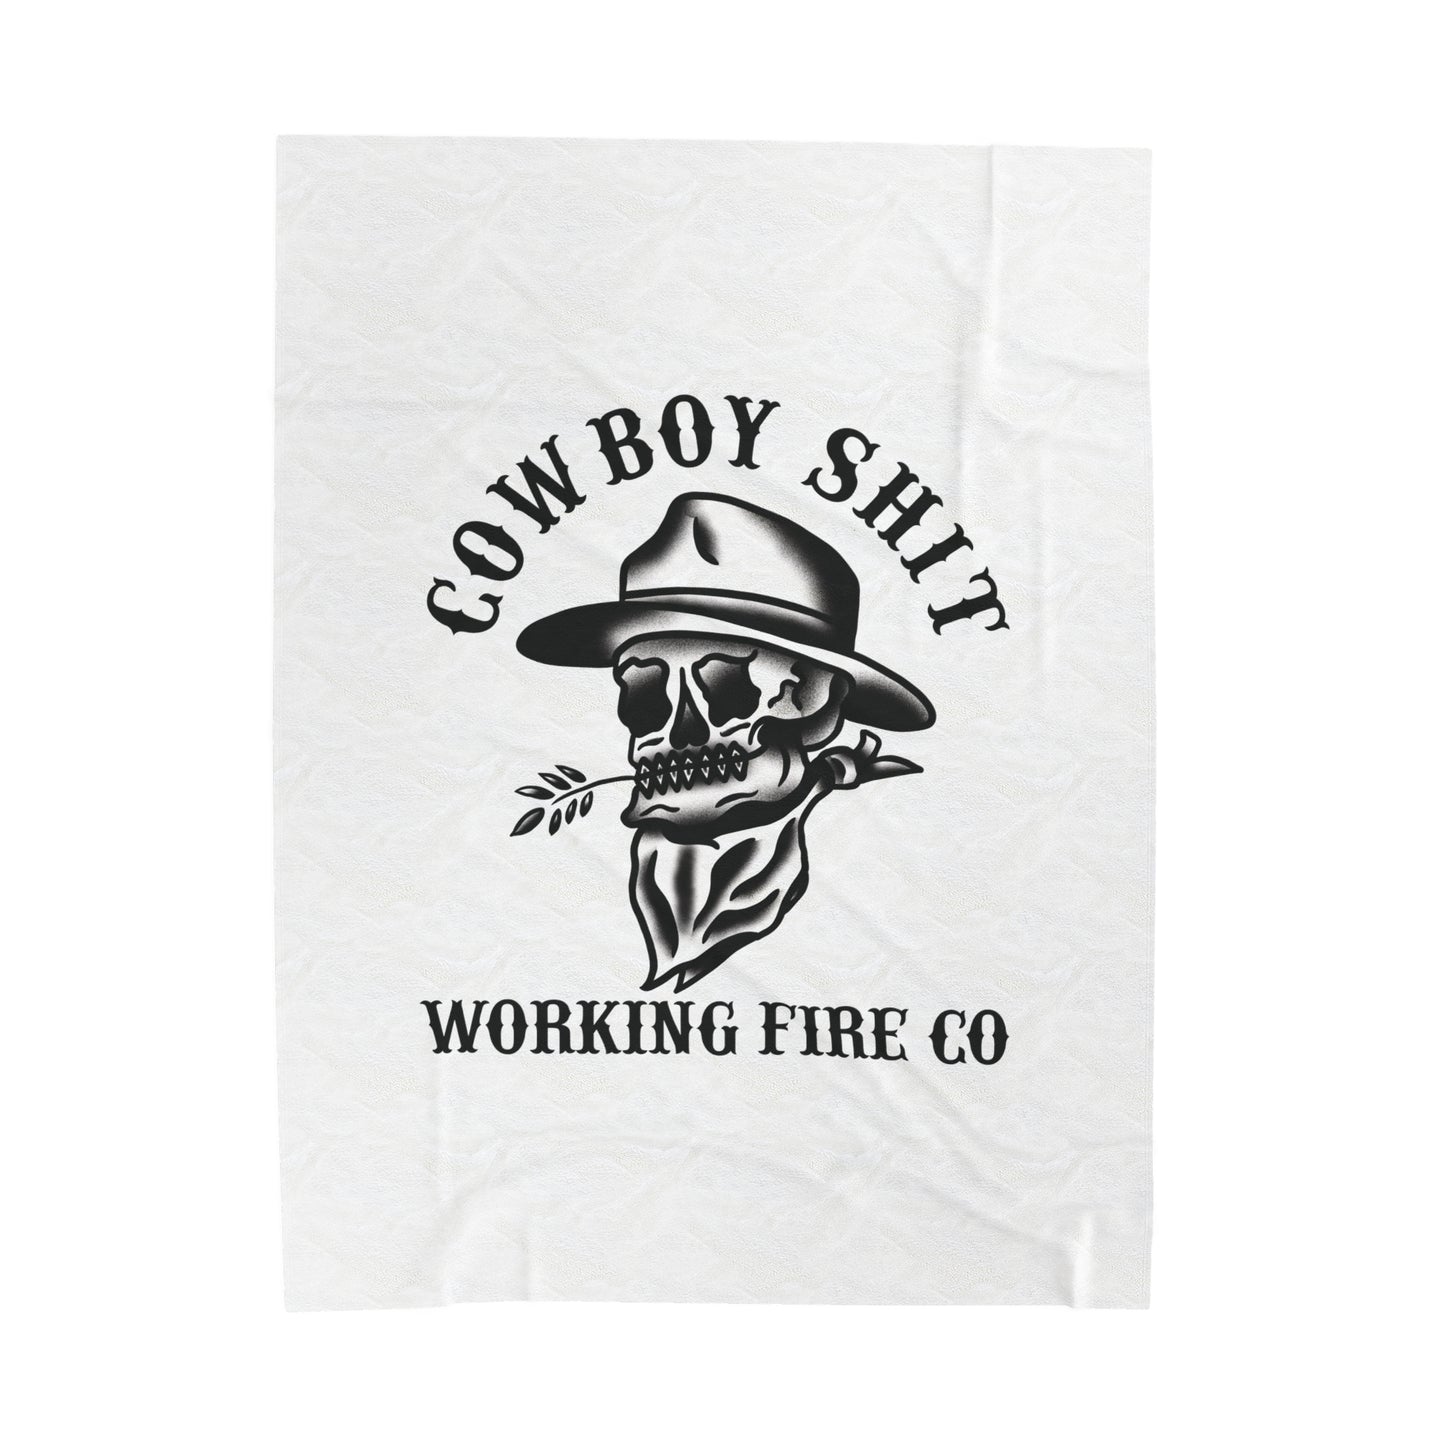 Cowboy Shit blanket